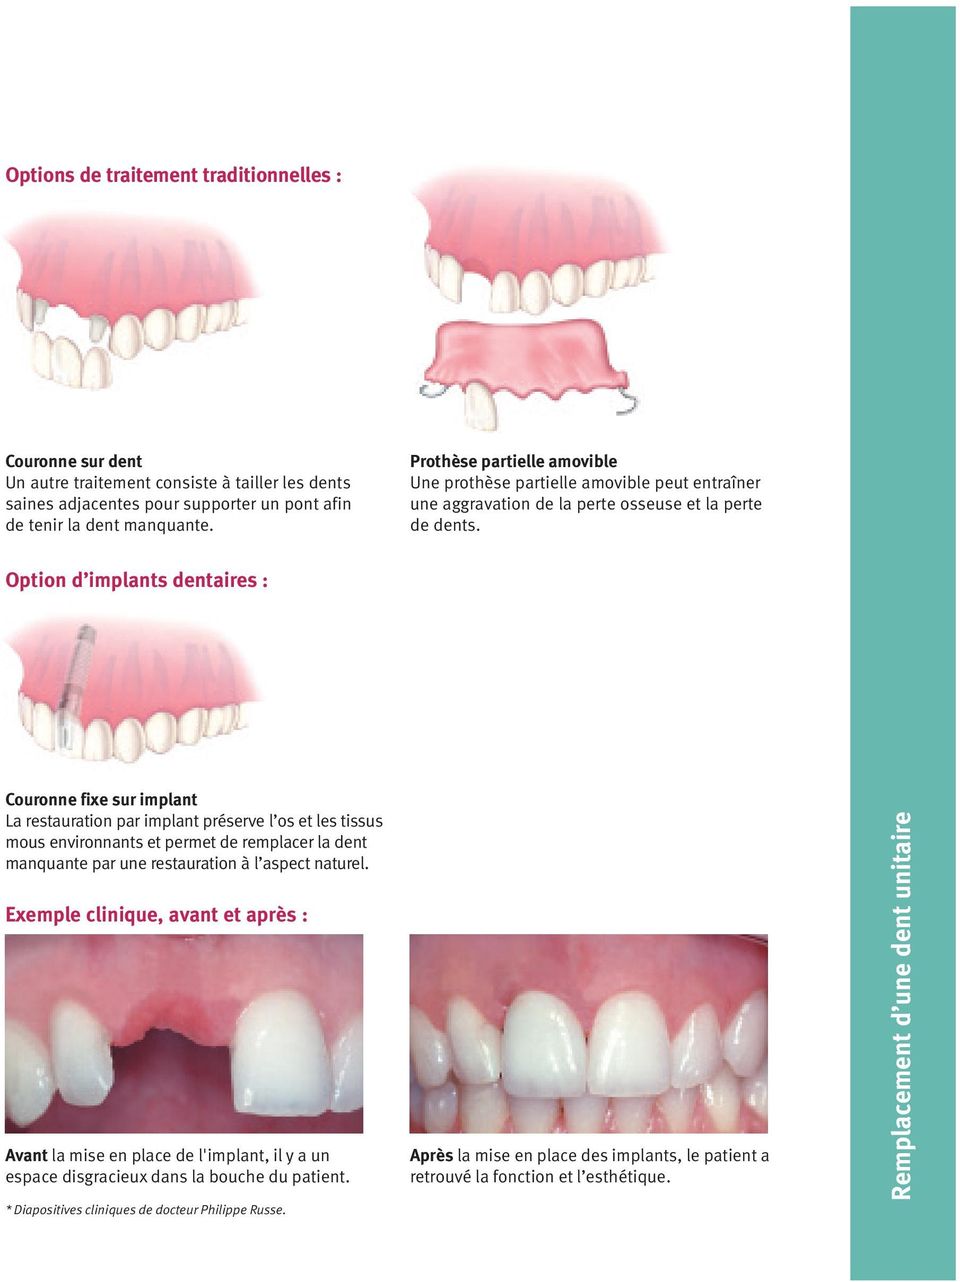 Option d implants dentaires : Couronne fixe sur implant La restauration par implant préserve l os et les tissus mous environnants et permet de remplacer la dent manquante par une restauration à l